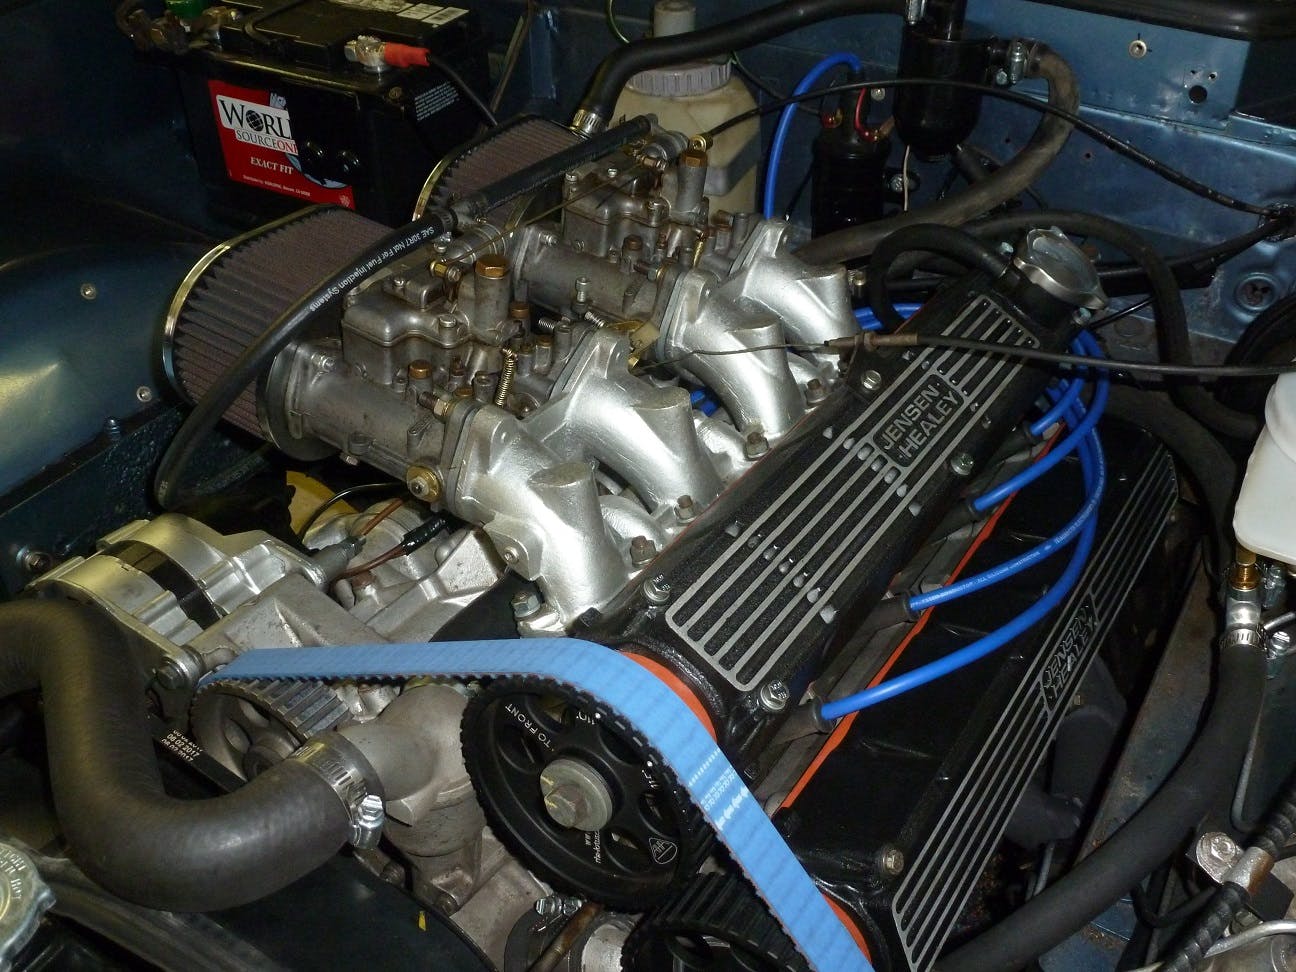 1974 Jensen-Healey engine